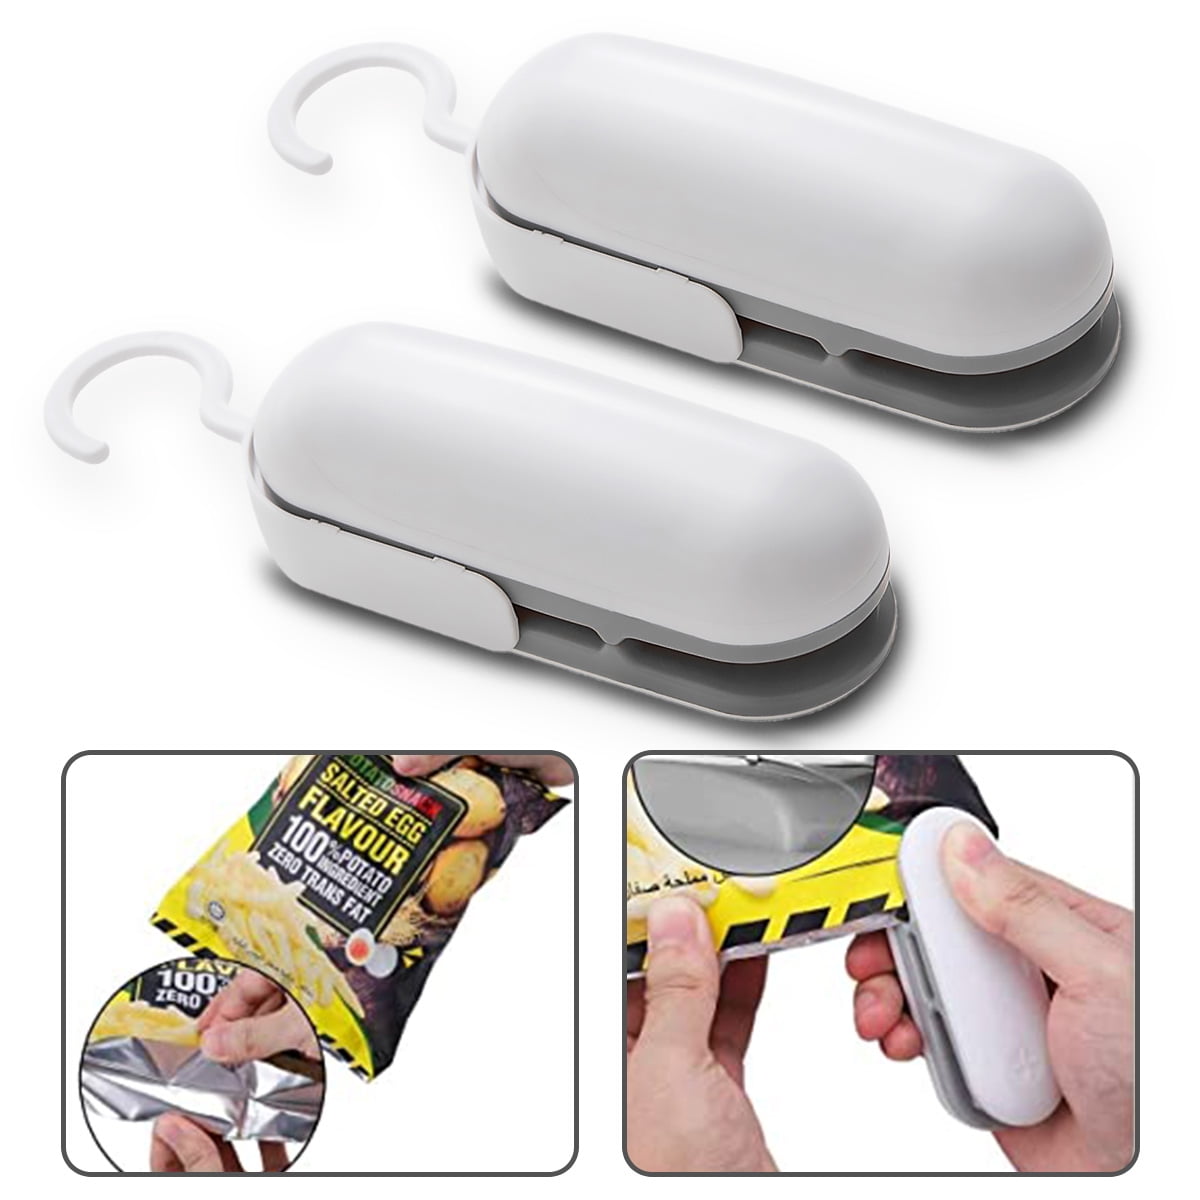 Mini Portable Handheld Heat Sealing Machine Plastic Bag-Sealer Seal Tool 